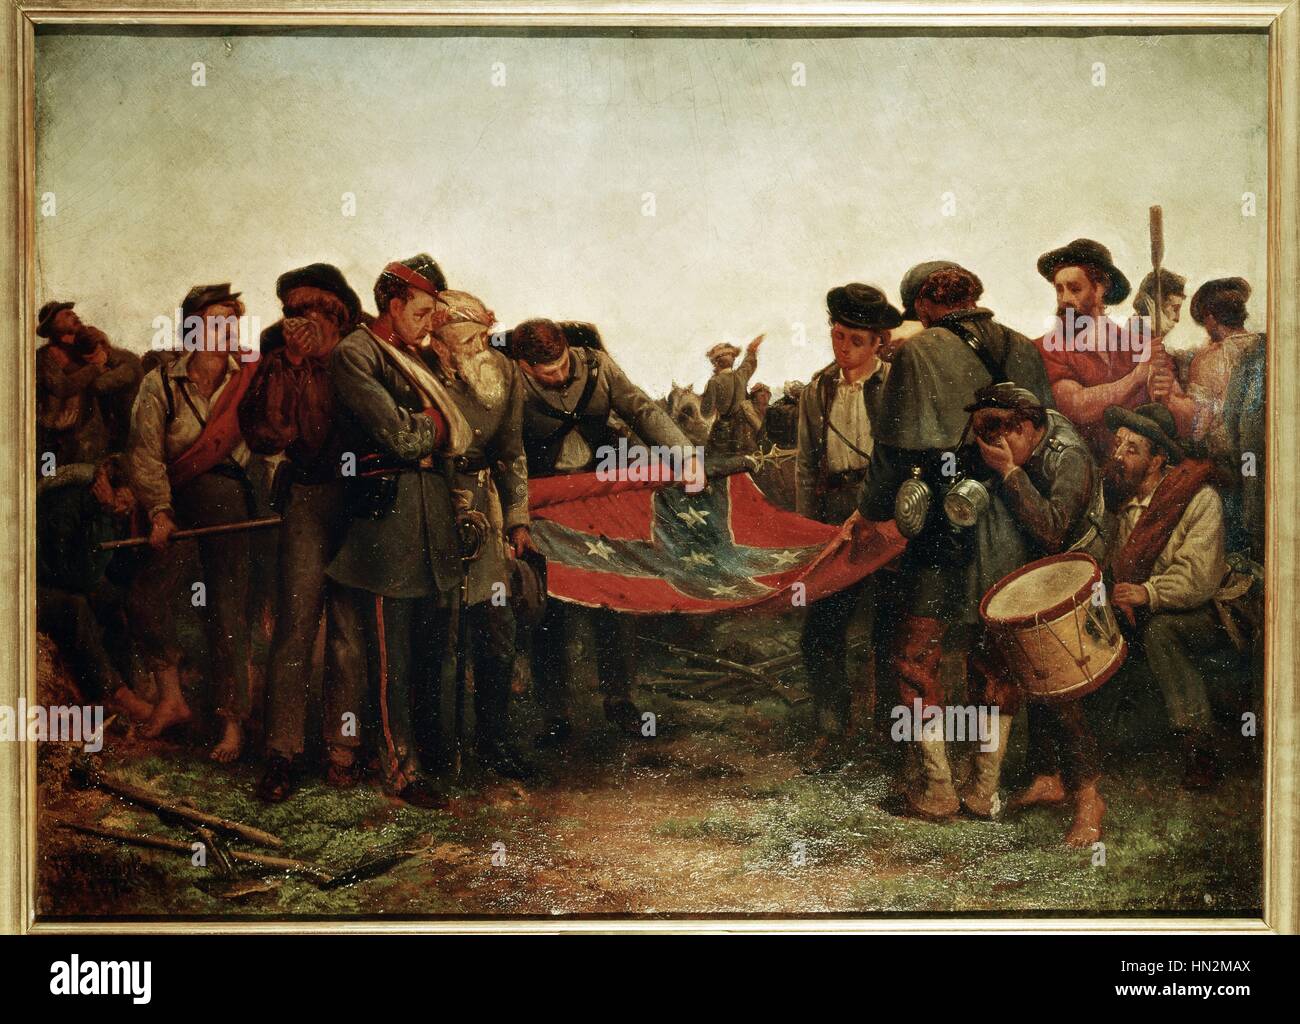 Richard Norris Brooke, Guerra Civil. Los soldados confederados enrollando la bandera después de la capitulación del General Lee en Appomatox (1865) 1872 Estados Unidos A. McCook Craighead colección Foto de stock